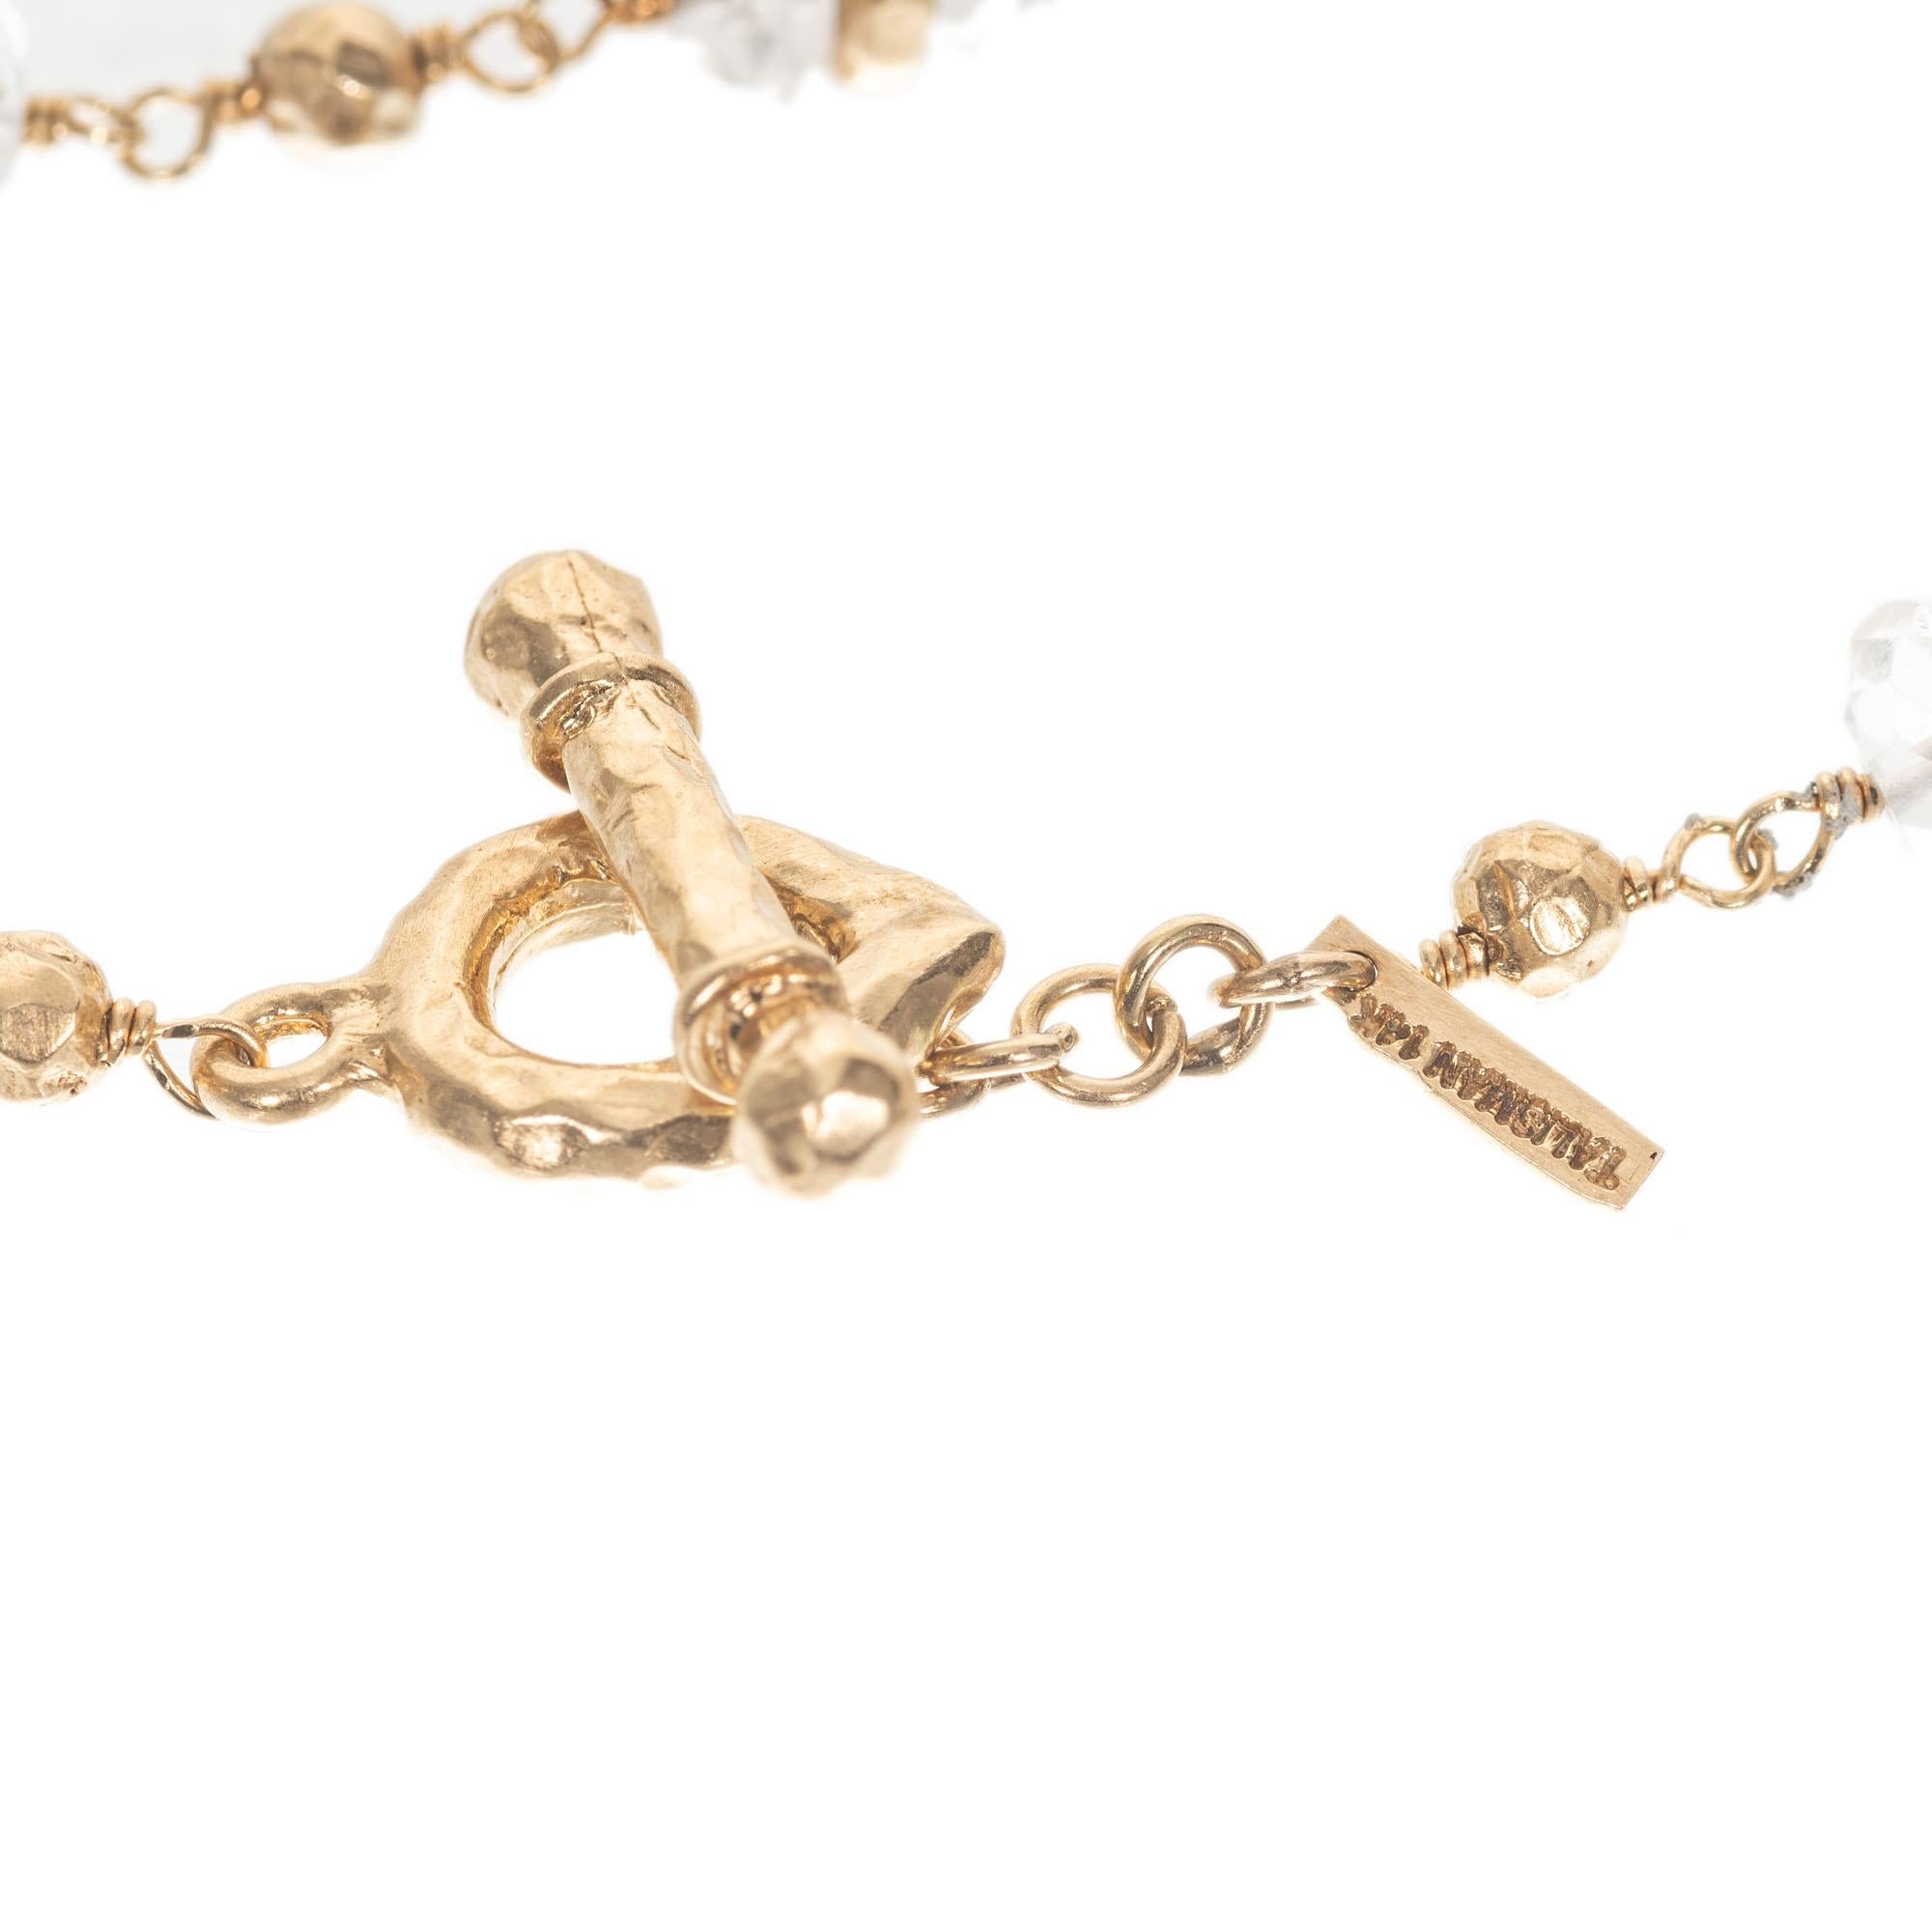 Talisman 12.00 Carat Quartz Gold Bead Pendant Necklace For Sale 1